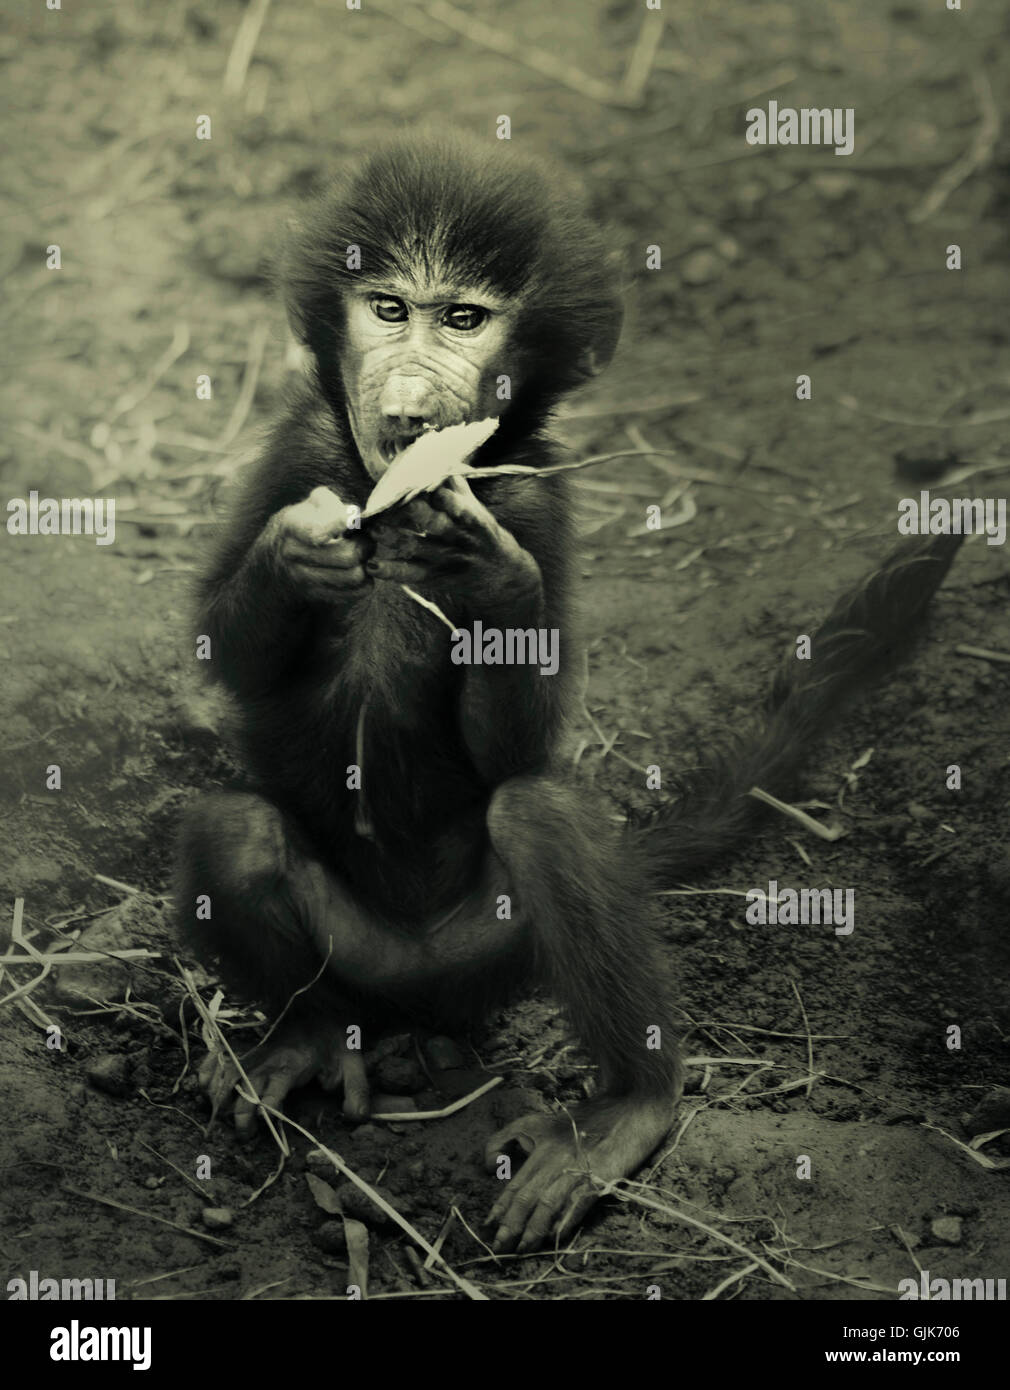 Una piccola scimmia giocando sul terreno sporco Foto Stock